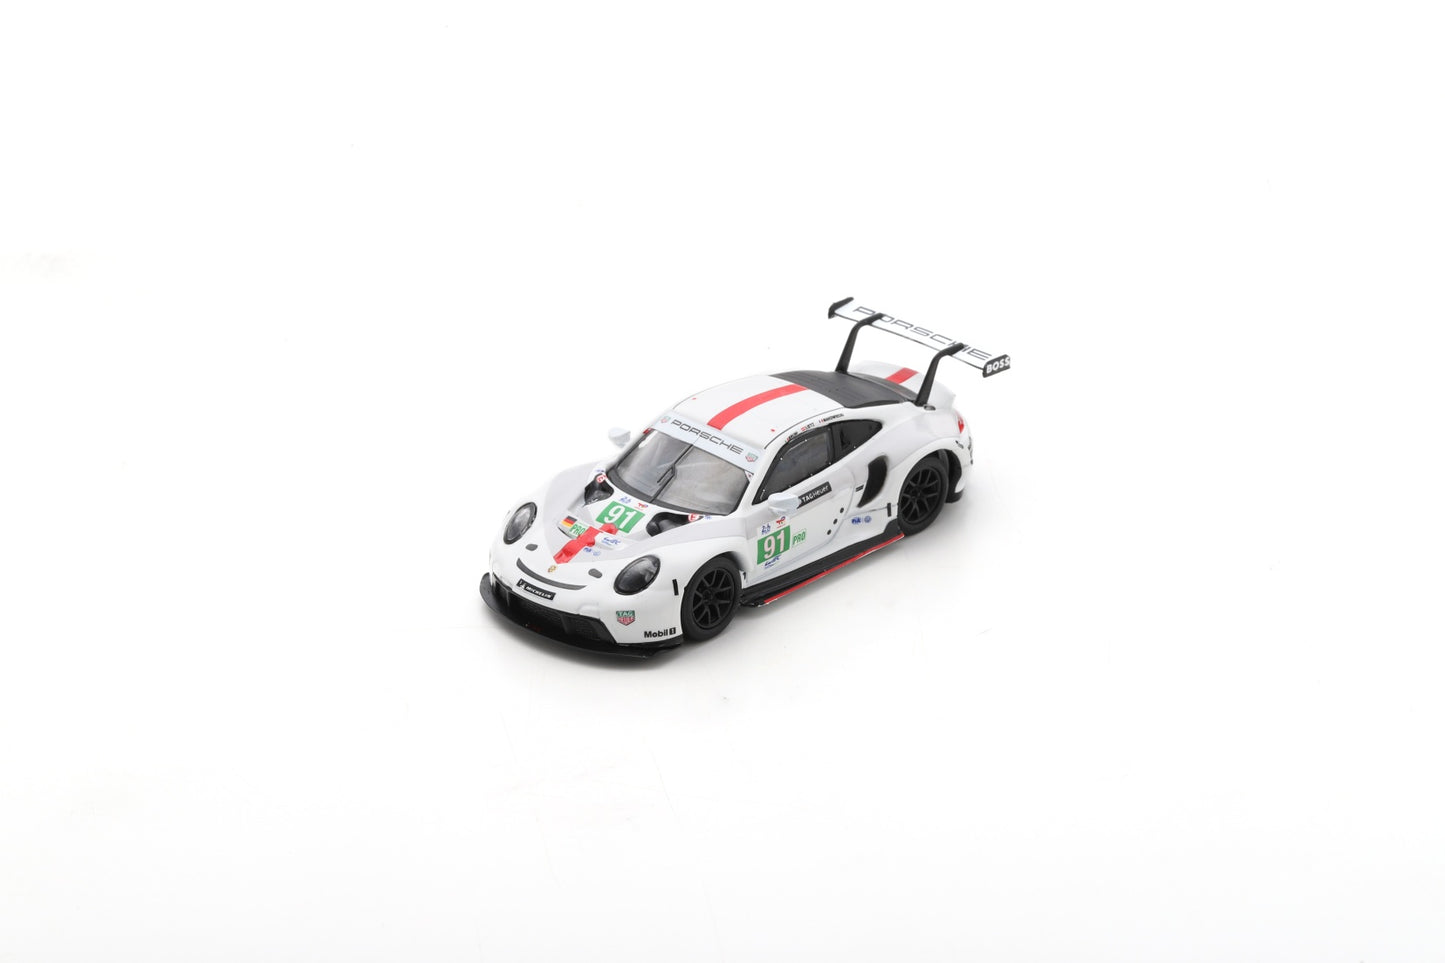 【2023年10月発売予定】 Spark Y273 1/64 Porsche 911 RSR-19 No.91 Porsche GT Team Winner LMGTE Pro class 24H Le Mans 2022
G. Bruni - R. Lietz - F. Makowiecki